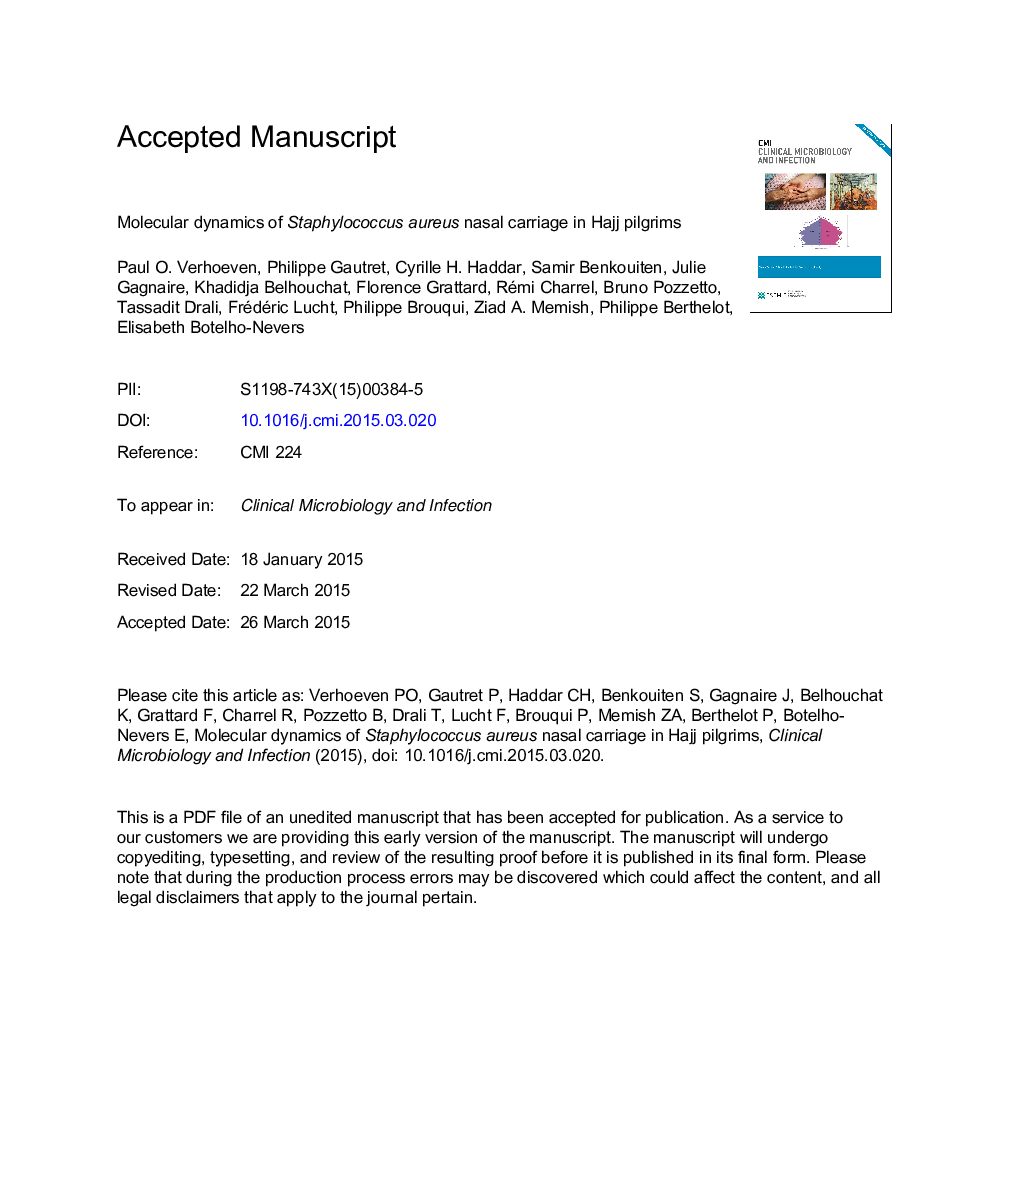 دینامیک مولکولی حامل استافیلوکوکوس اورئوس در زائران حج 